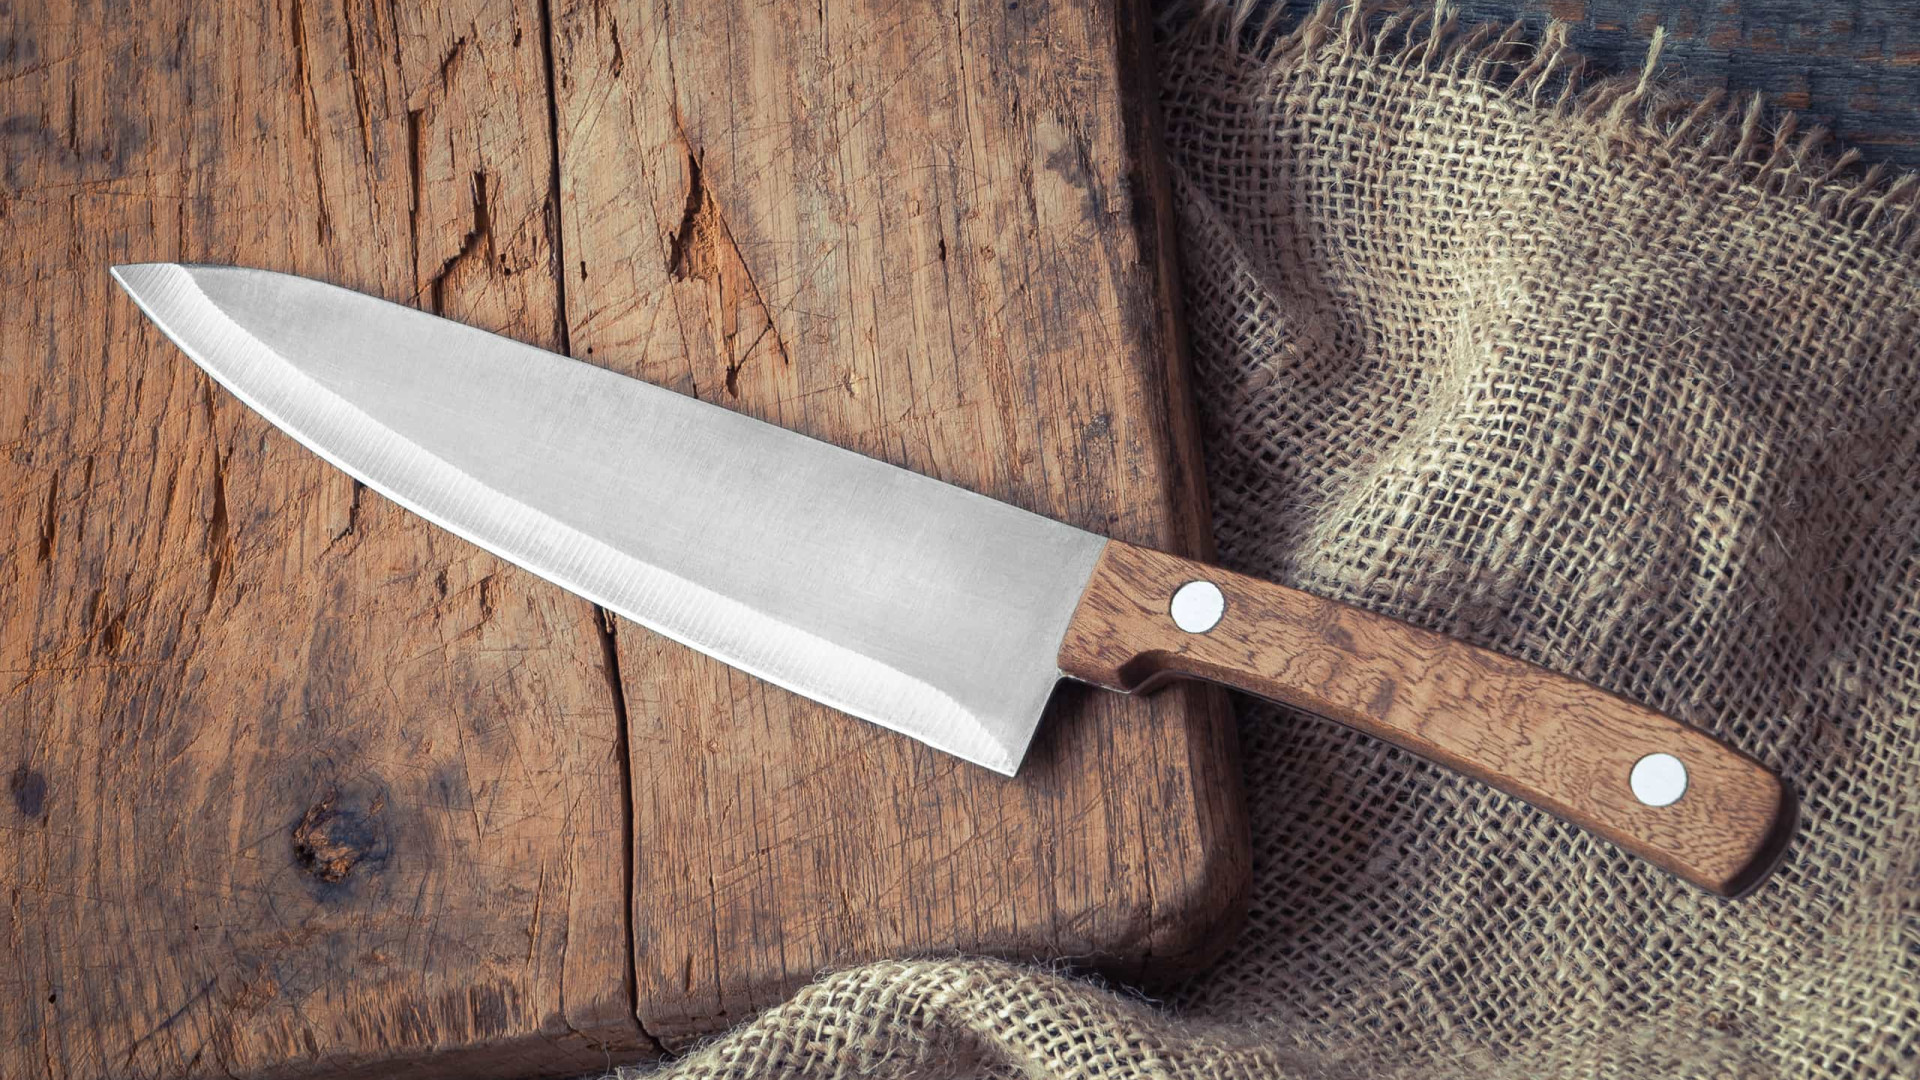  Sognare un coltello: cosa significa?